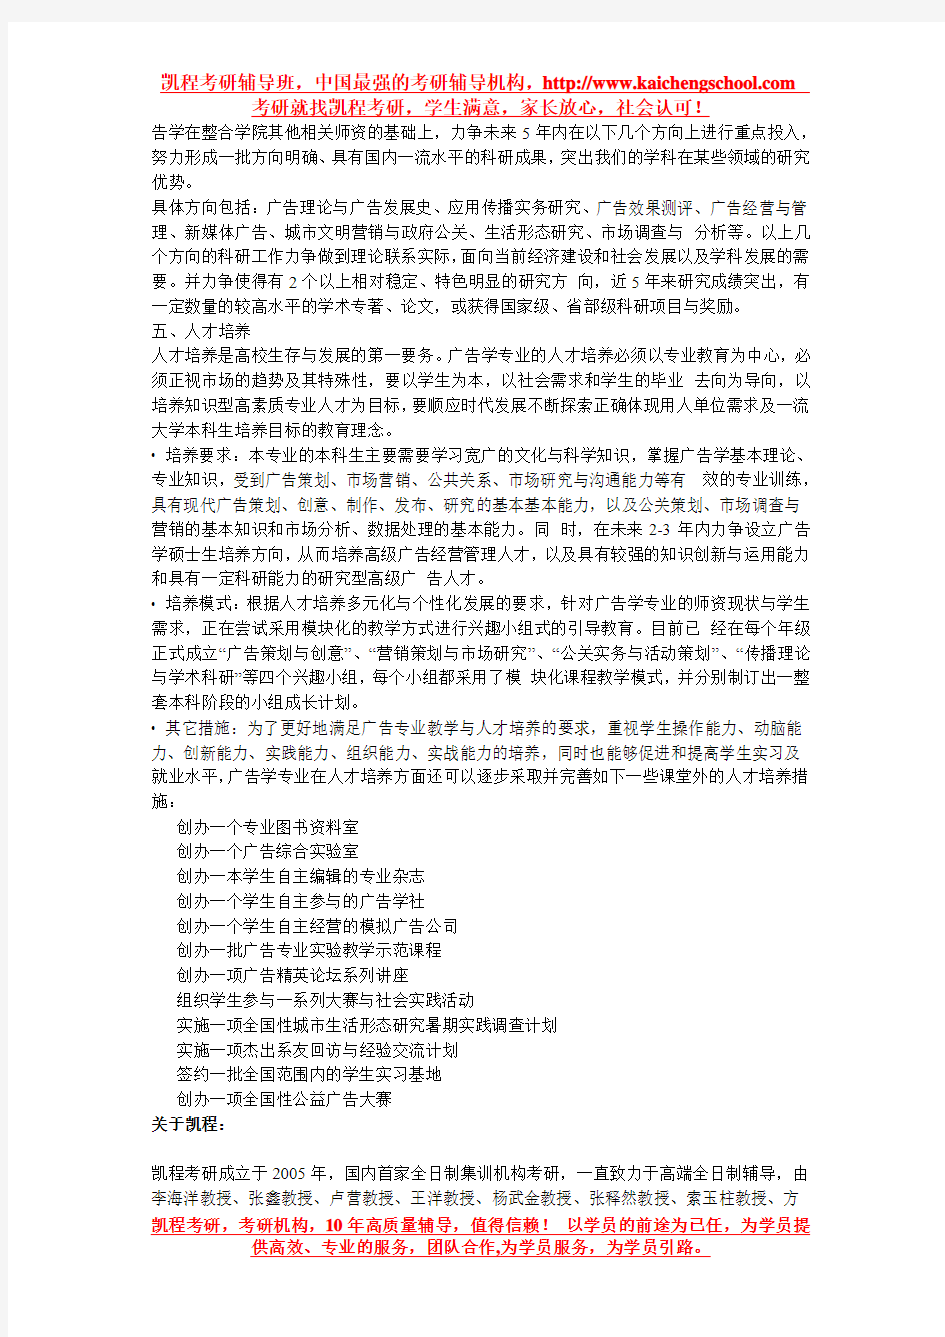 南京大学新闻传播学院广告与传播学系简介